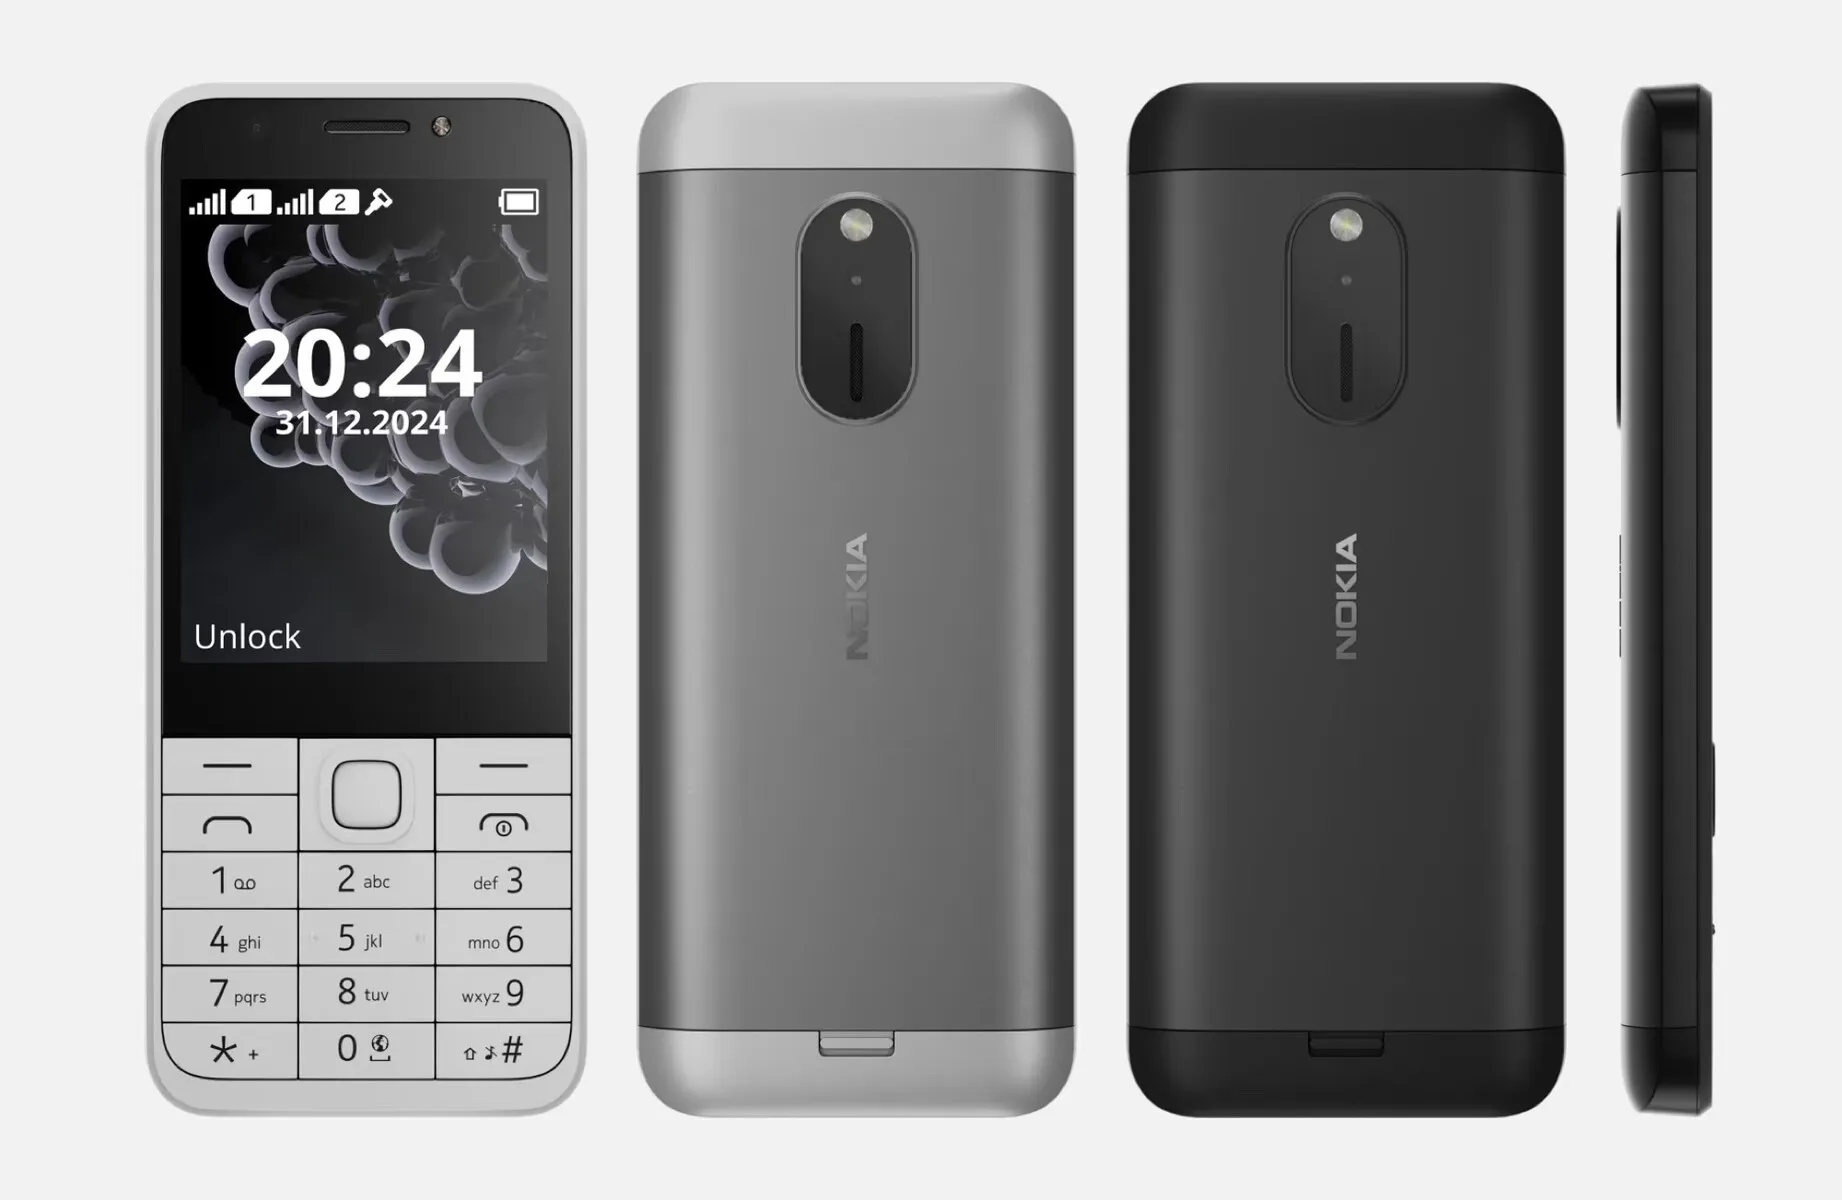 Nokia_230